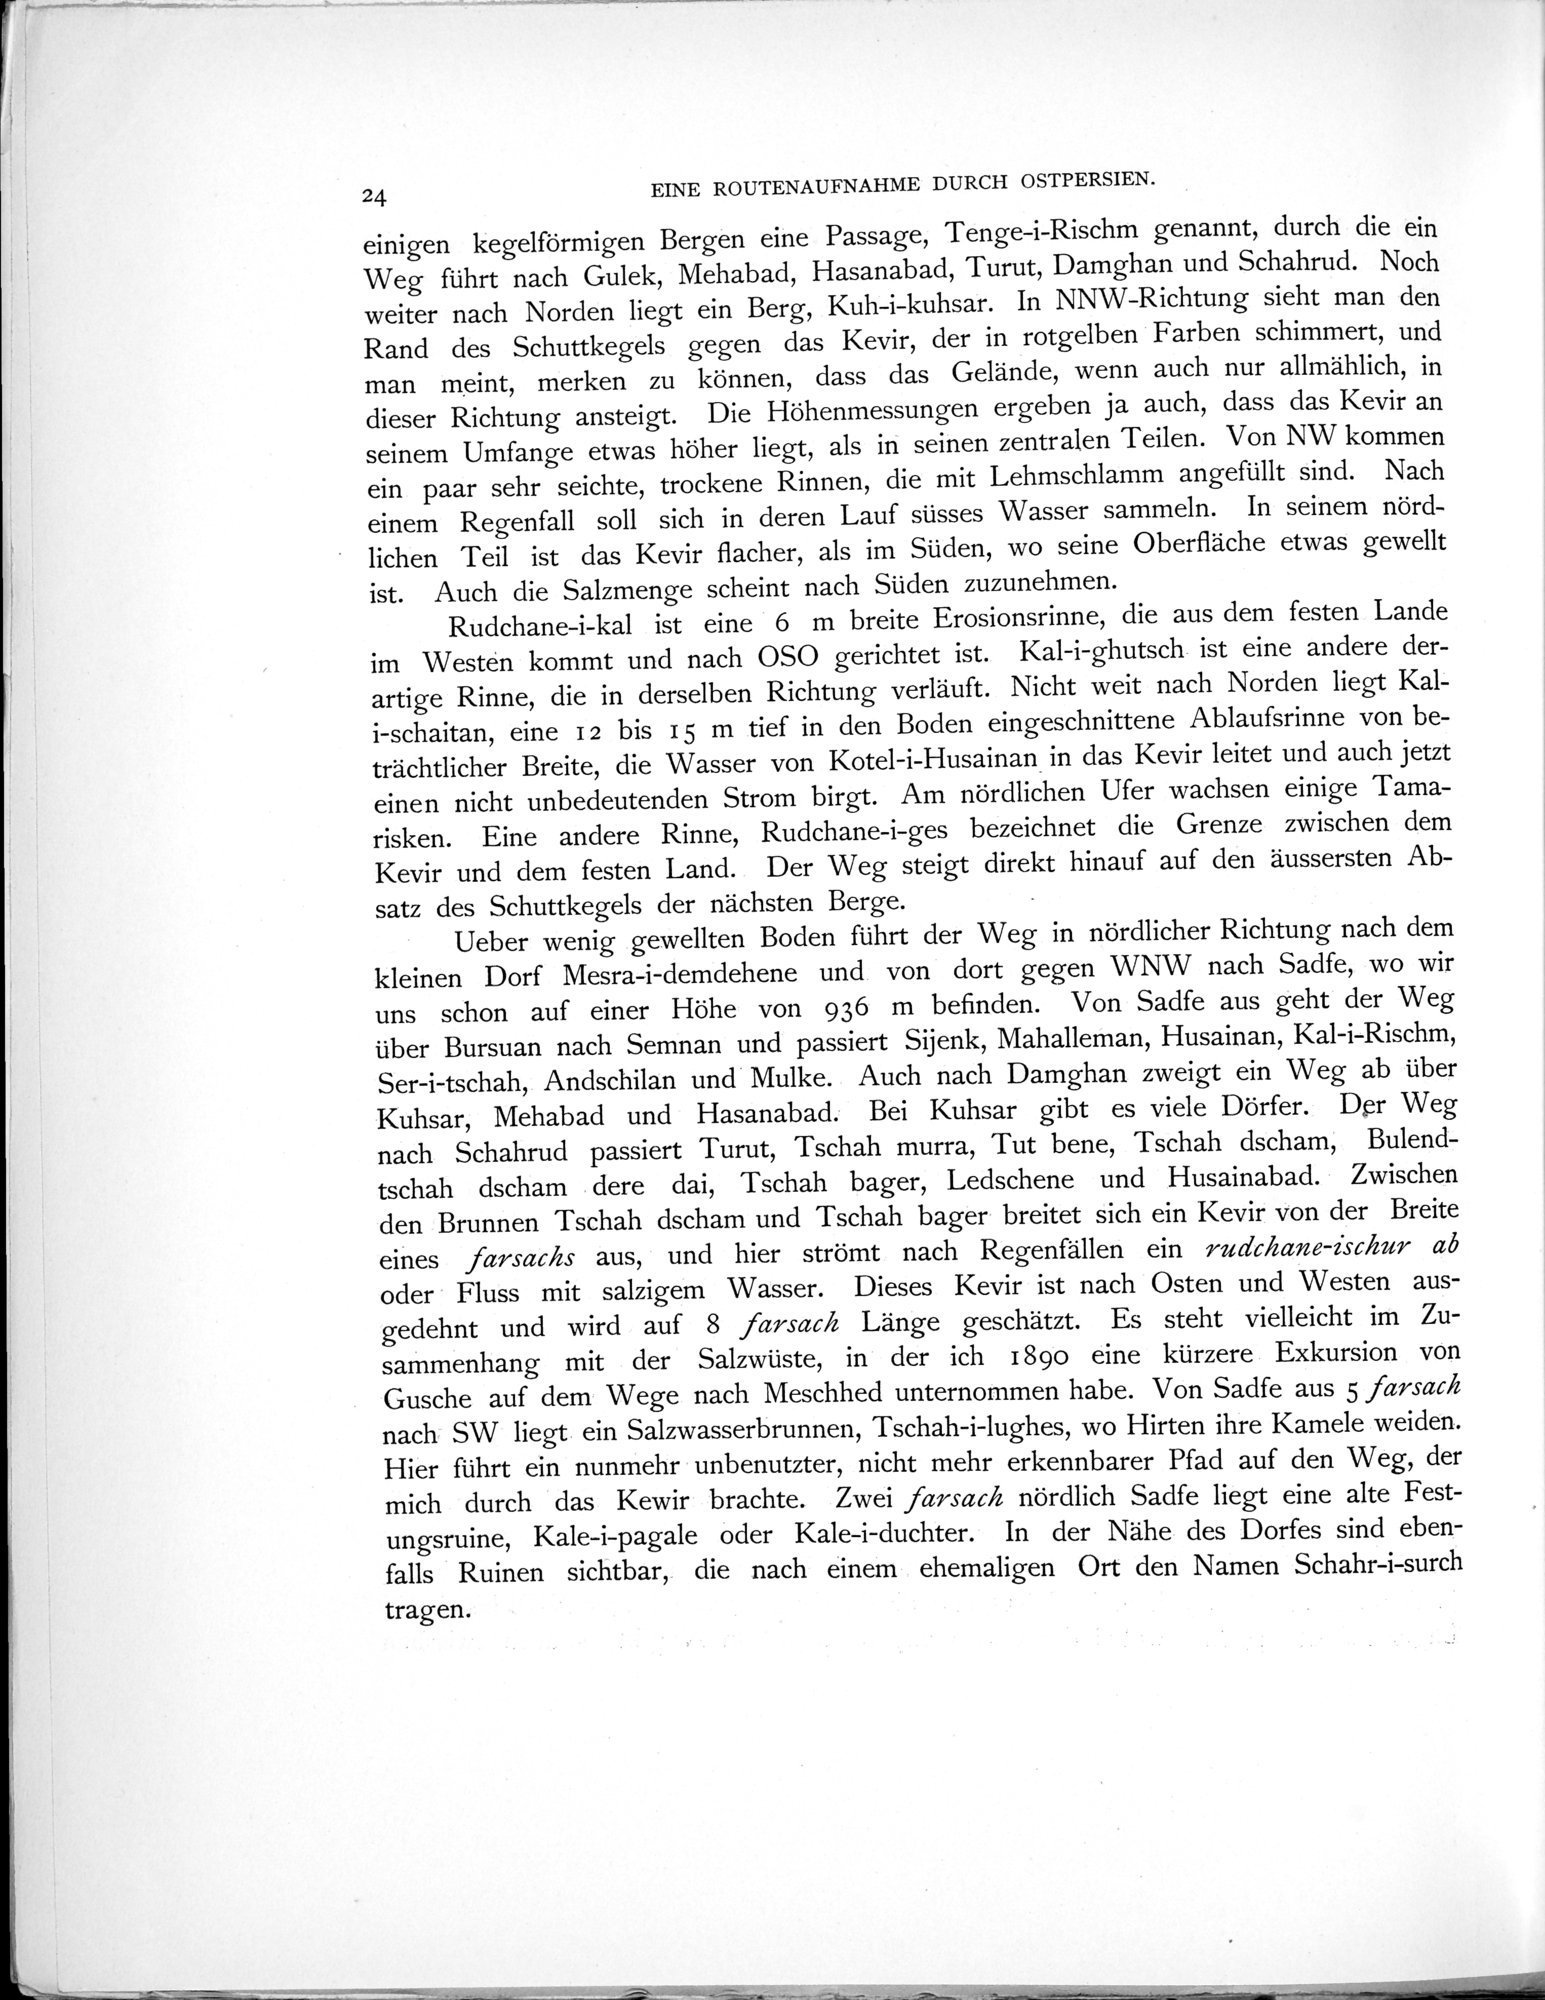 Eine Routenaufnahme durch Ostpersien : vol.1 / Page 76 (Grayscale High Resolution Image)